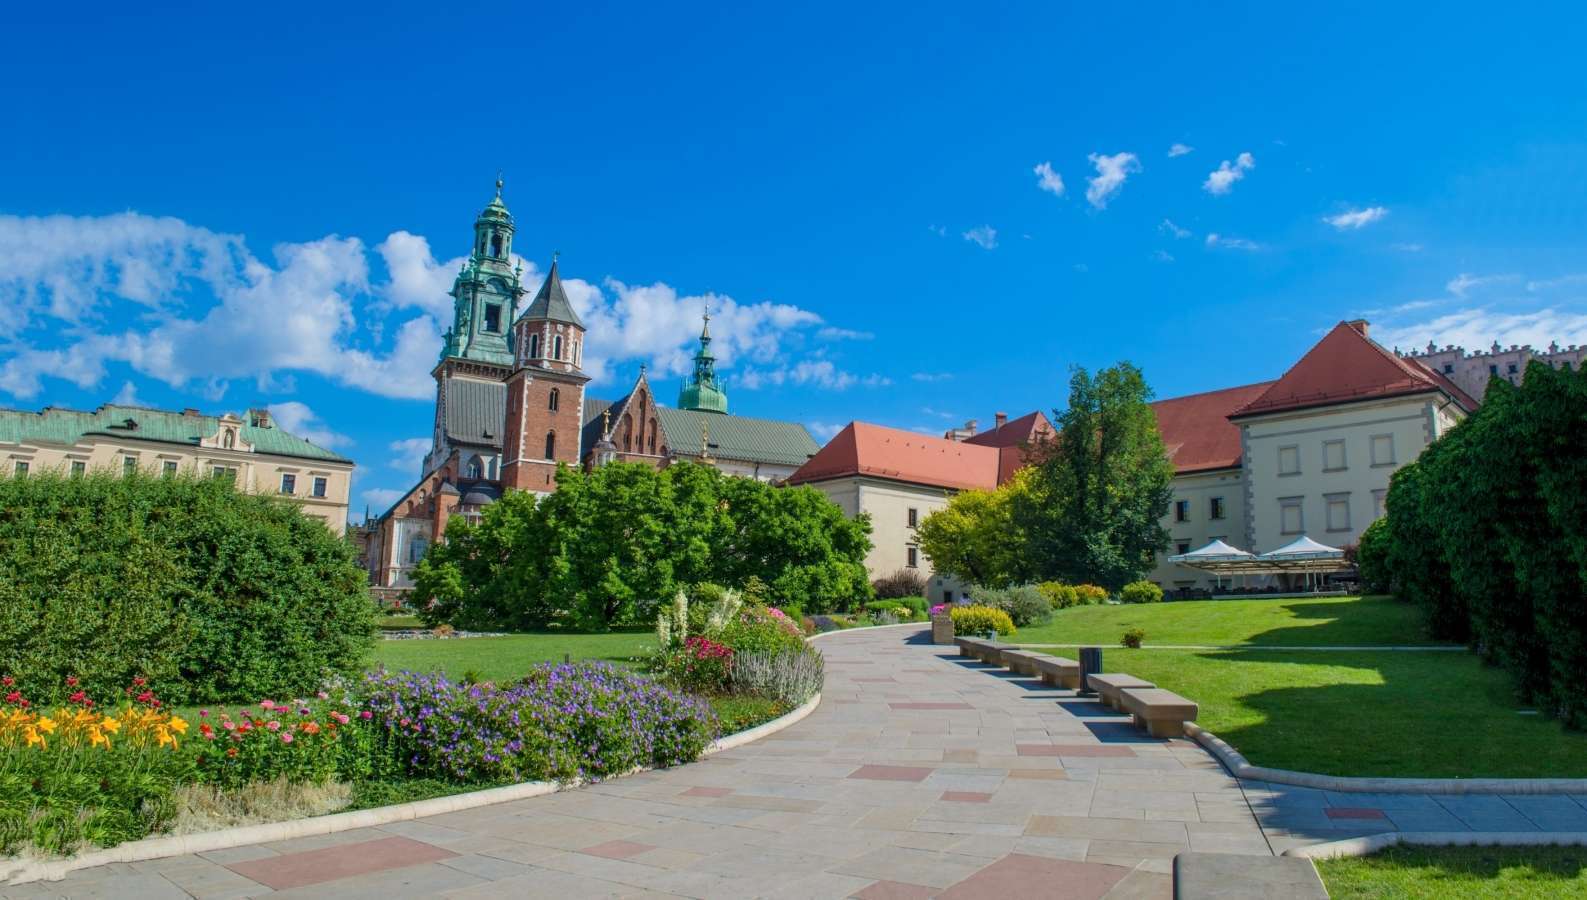  Cracovie magique, une vieille ville polonaise médiévale :: Fshoq!  Blog de voyage
